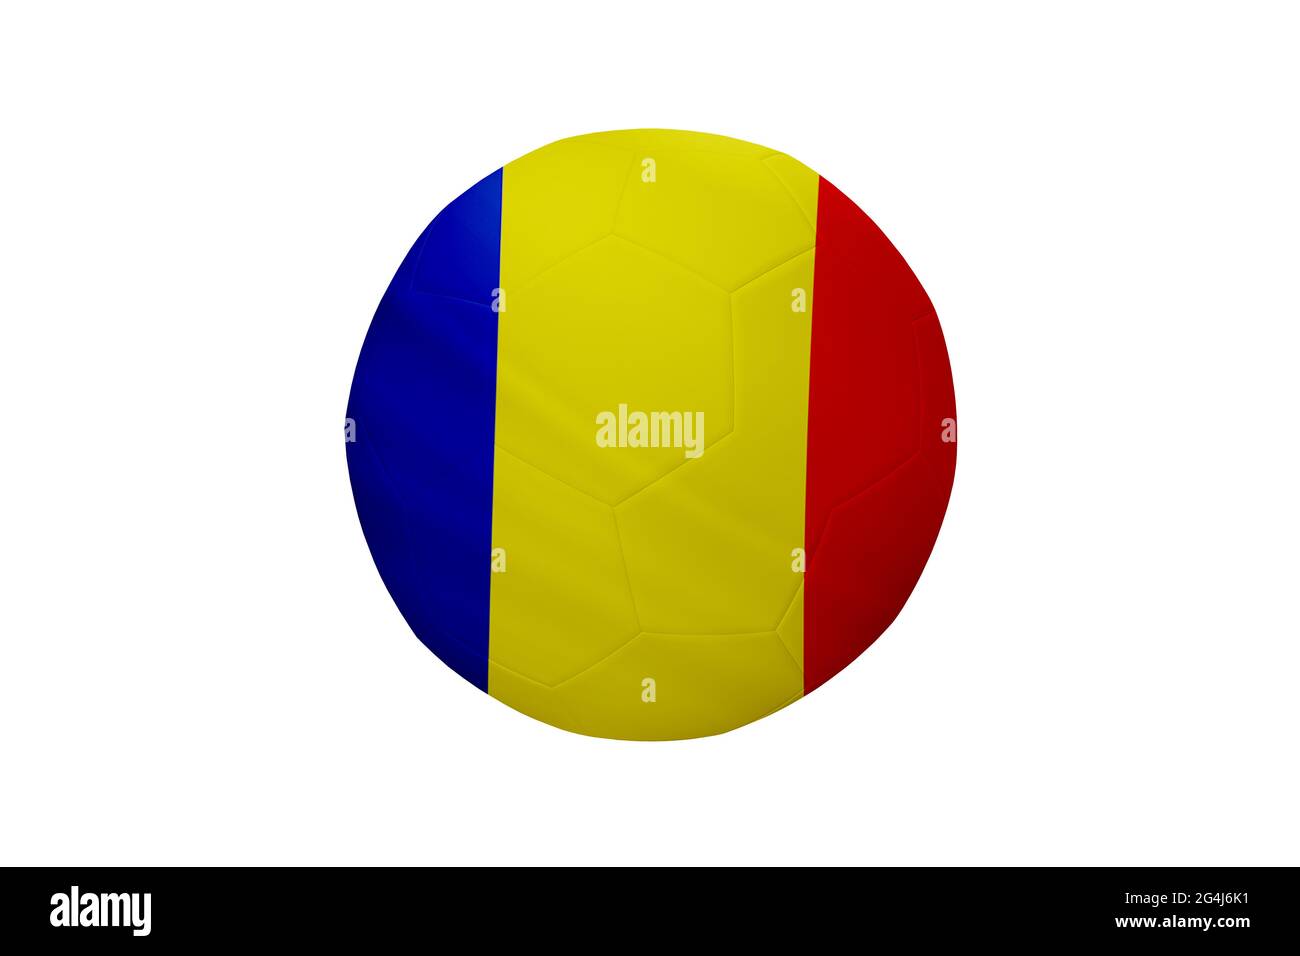 Fußball in den Farben der rumänischen Flagge isoliert auf weißem Hintergrund. In einem konzeptionellen Meisterschaftsbild, das Rumänien unterstützt. Stockfoto